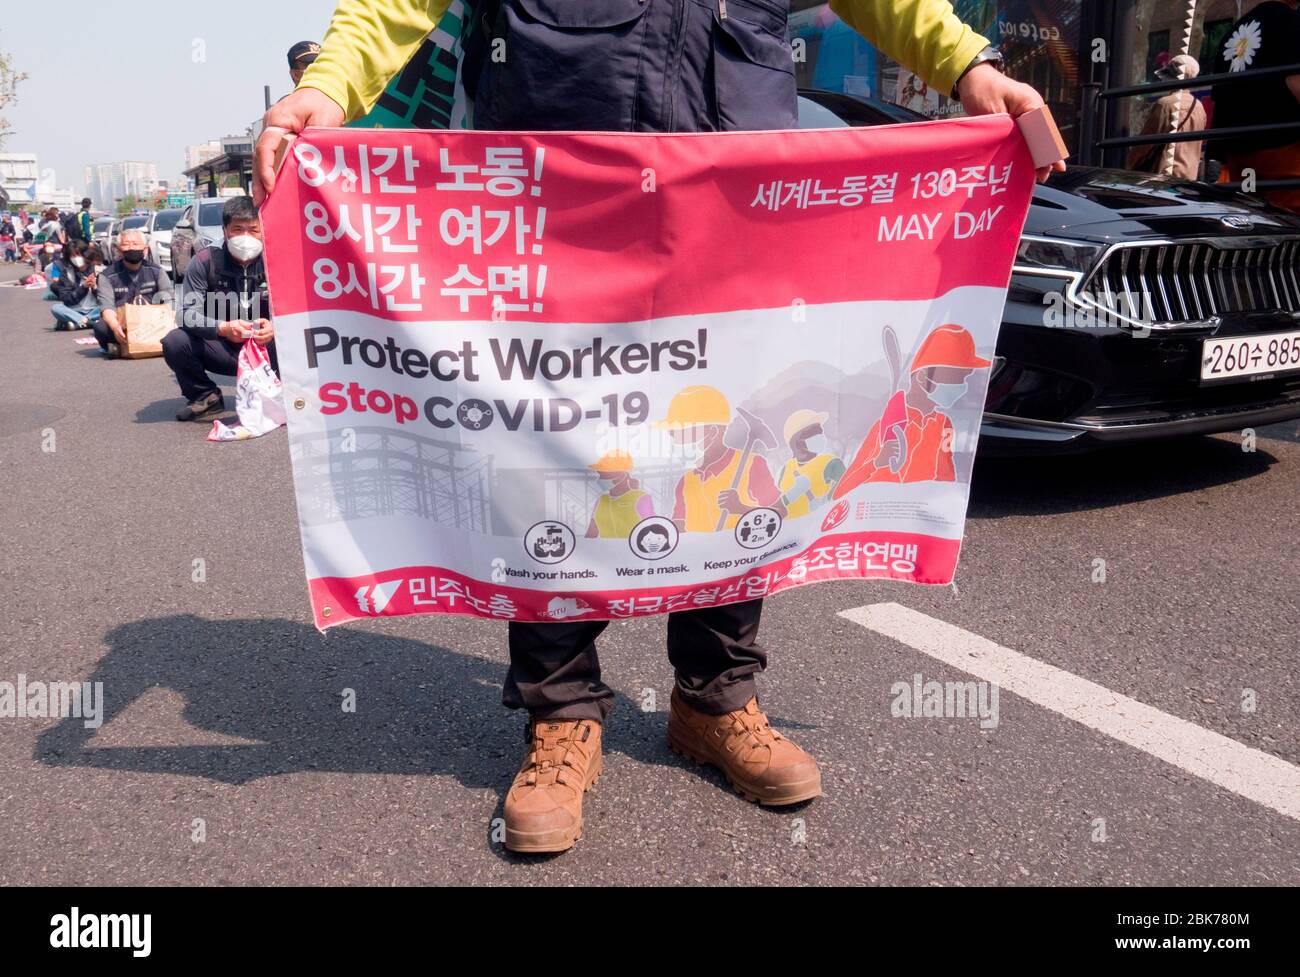 Rally del día del Trabajo, 1 de mayo de 2020 : usando máscaras para prevenir la infección por el coronavirus COVID-19, los trabajadores surcoreanos marchan durante una manifestación del día del Trabajo en Seúl central, Corea del Sur. Los caracteres coreanos en un cartel leen, "ocho horas de trabajo! Ocho horas de tiempo libre! ¡ocho horas de sueño!'. Las organizaciones de trabajadores redujeron la escala del rally del día del Trabajo y marcharon y organizaron un rally online vía YouTube para prevenir la infección del virus COVID-19. Crédito: Lee Jae-won/AFLO/Alamy Live News Foto de stock